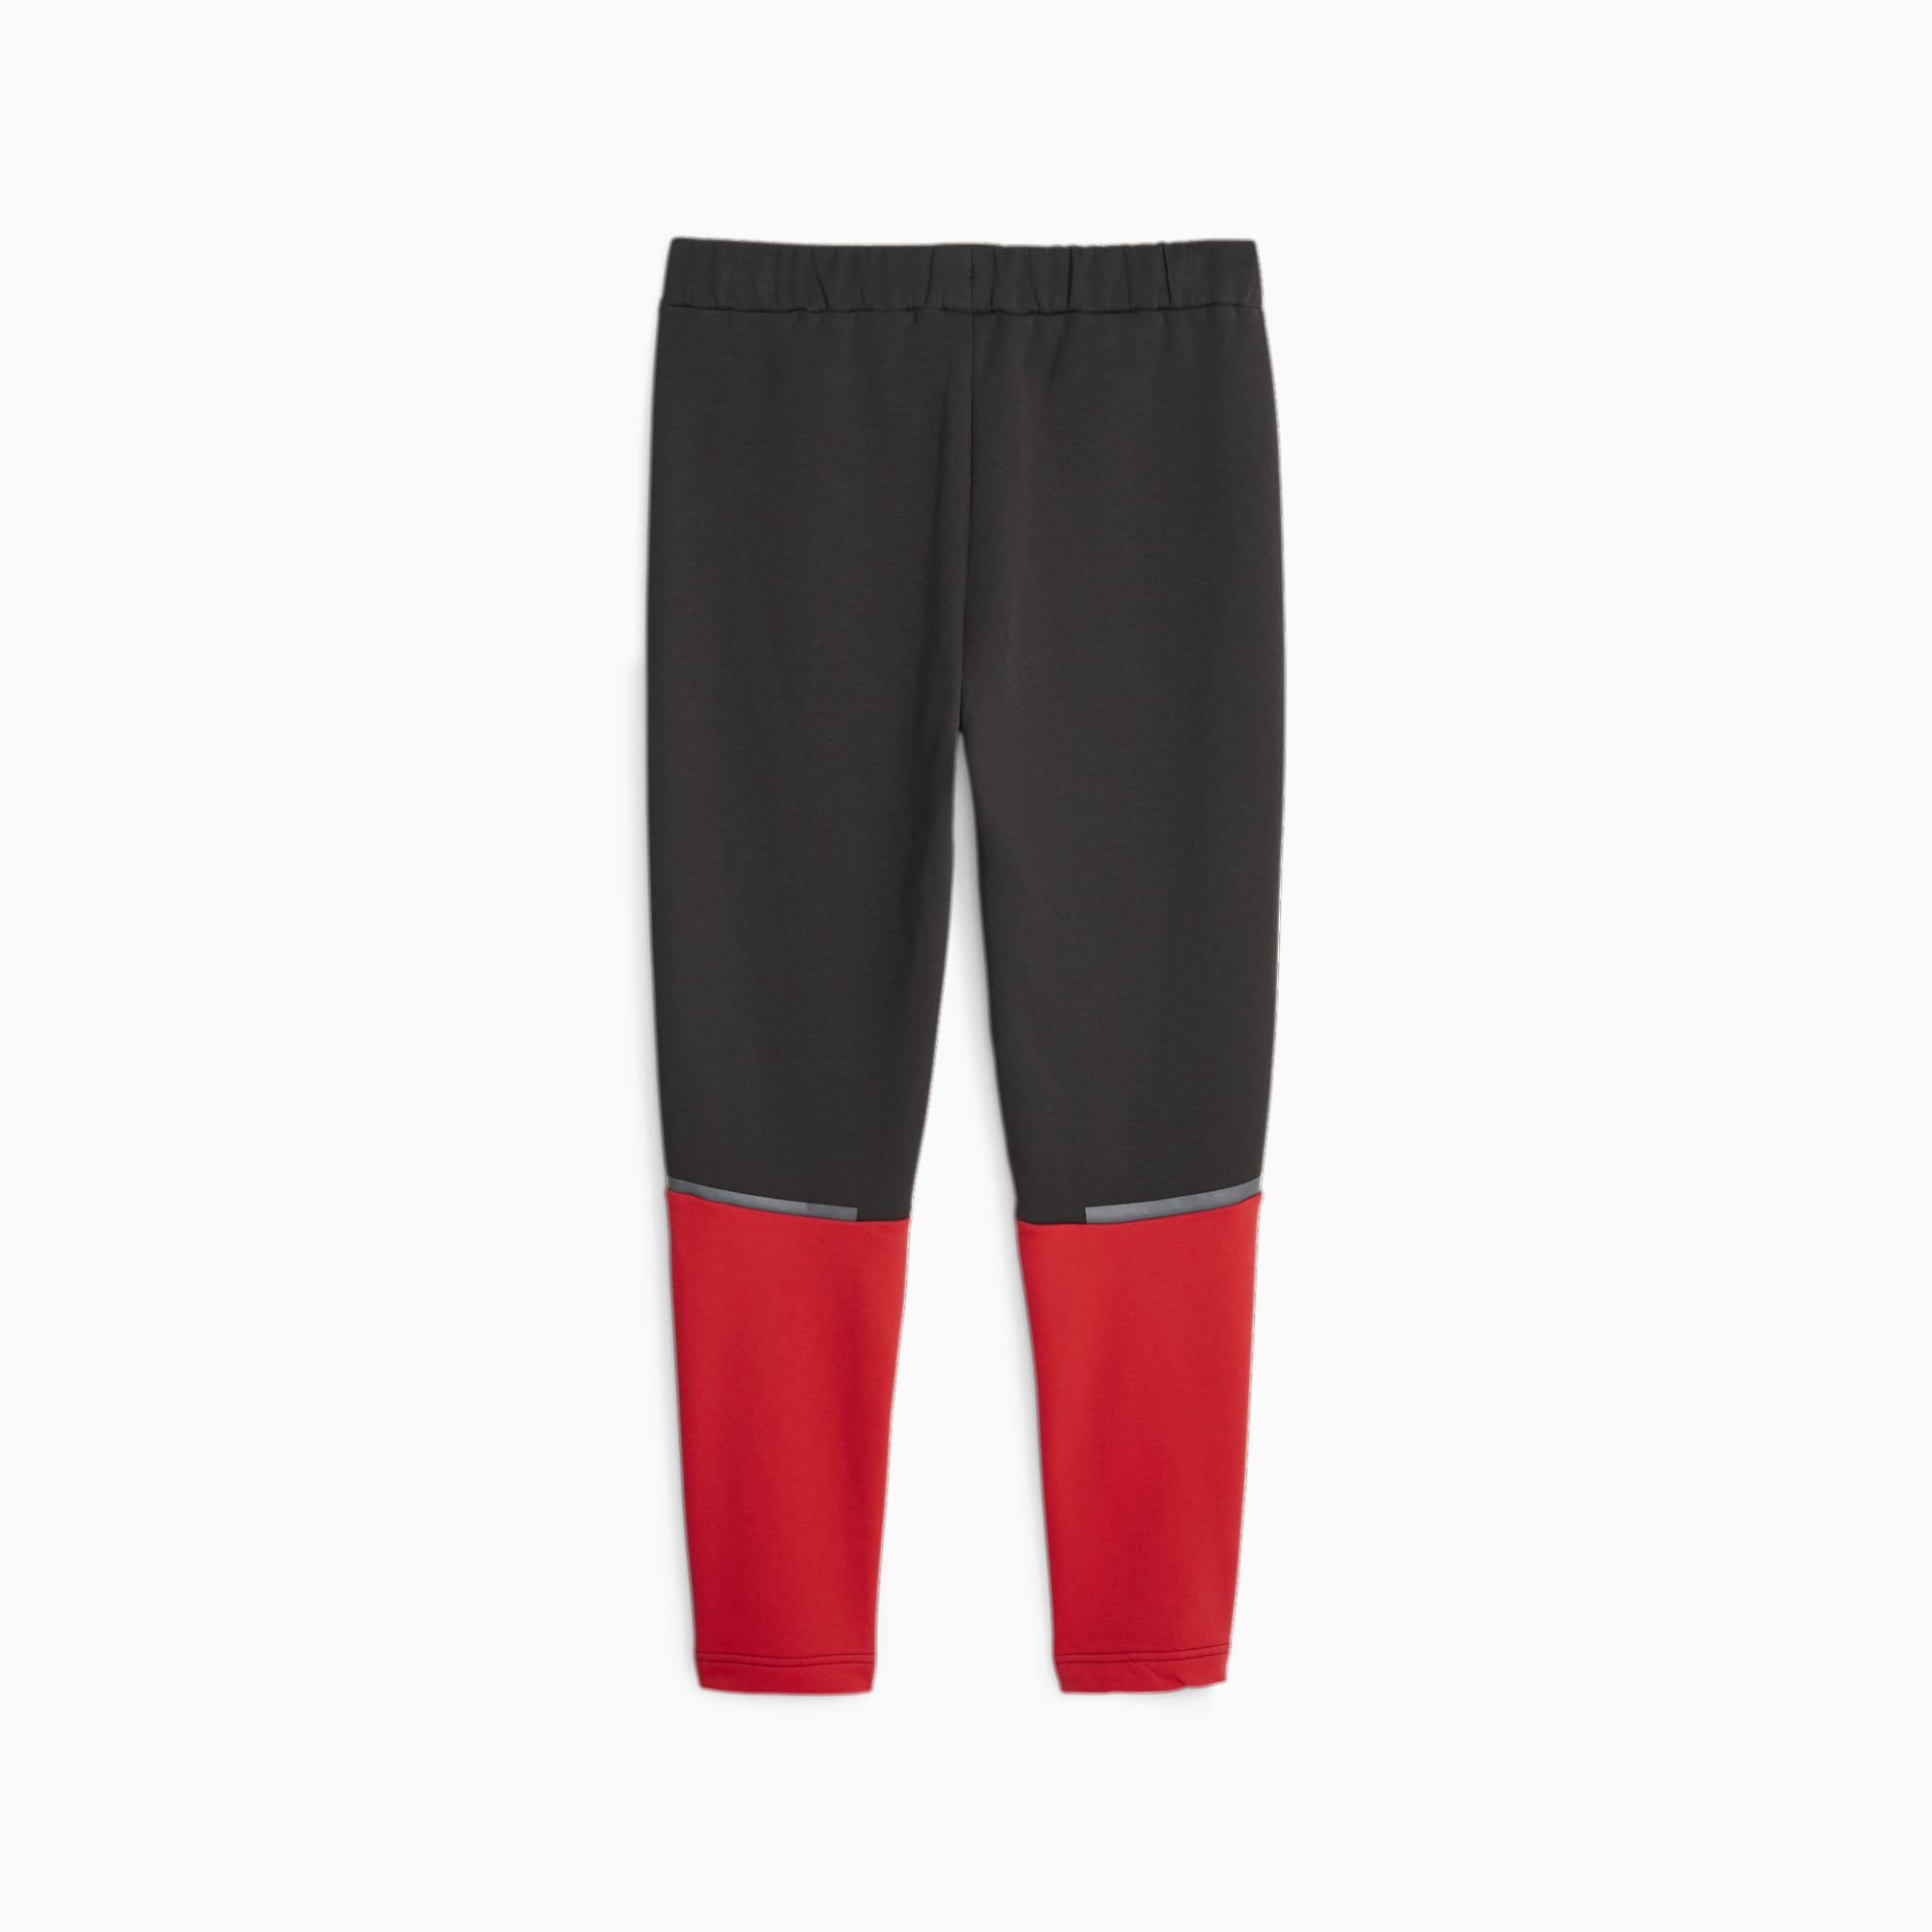 PUMA Pantalon De Survêtement Casuals AC Milan Pour Homme, Noir/Rouge